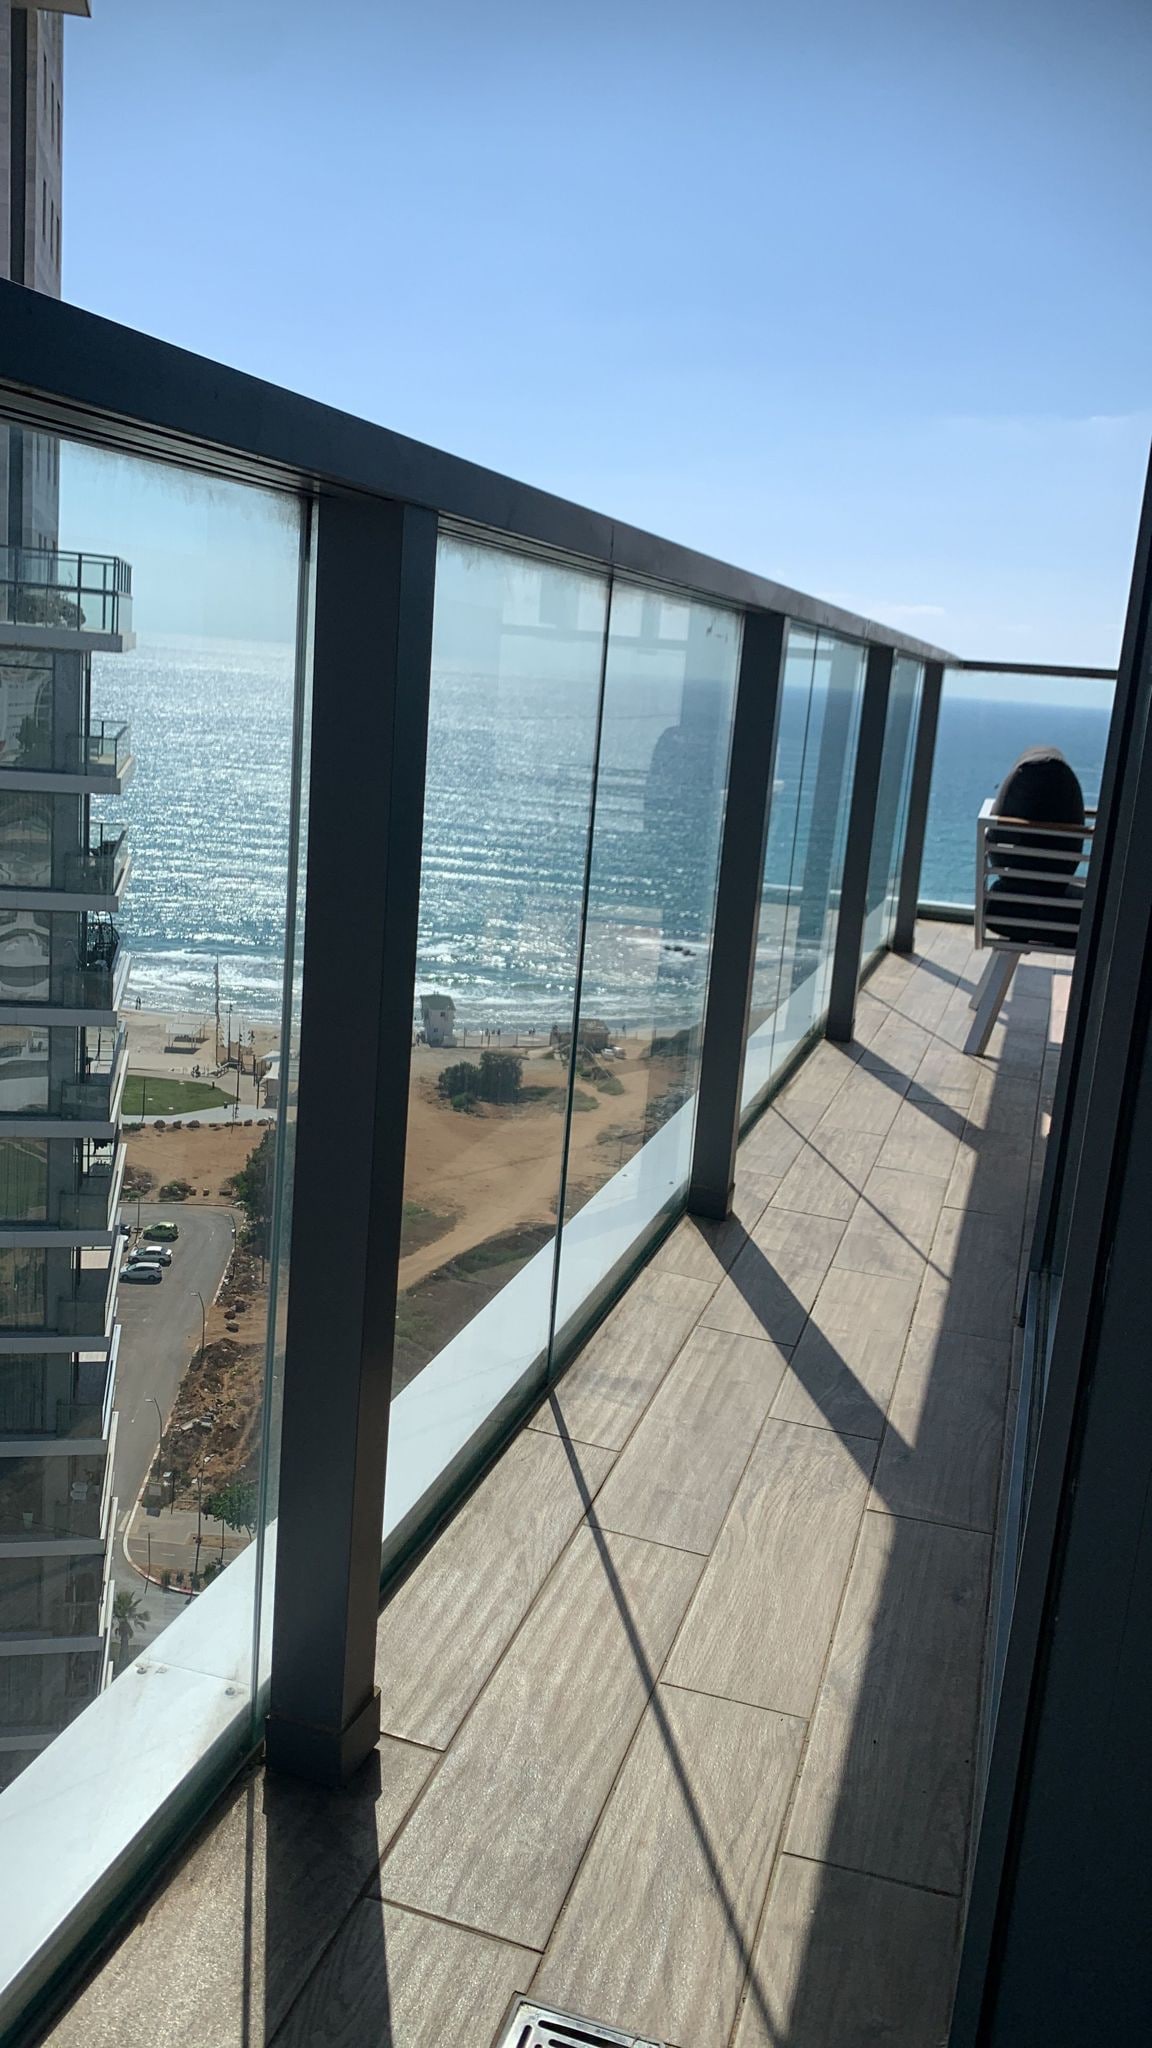 דירת פאר על הים
Luxury apartment beachfront